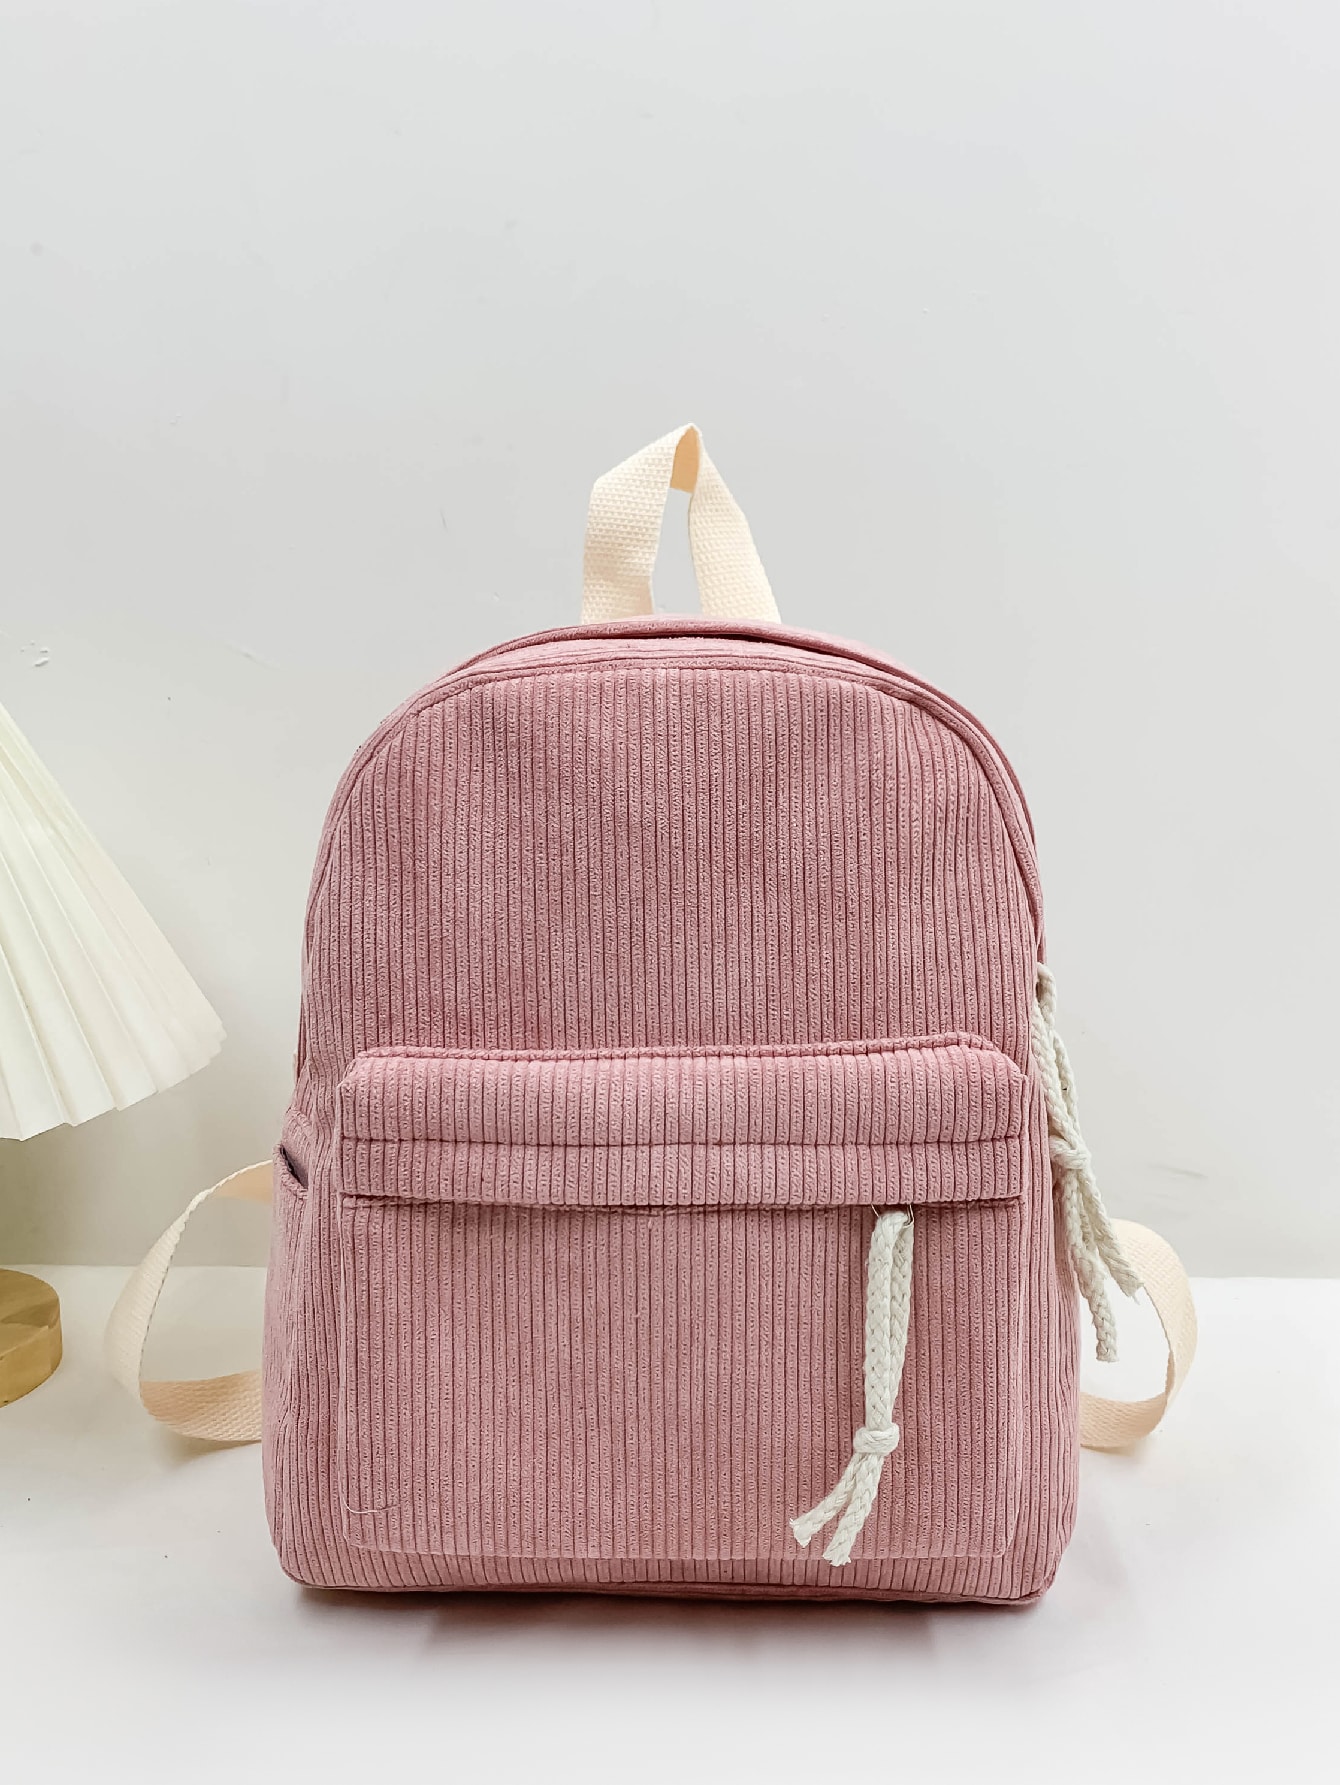 Классический рюкзак с графическим рисунком вельвета, розовый легкий портативный однотонный вельветовый модный повседневный рюкзак бежевый